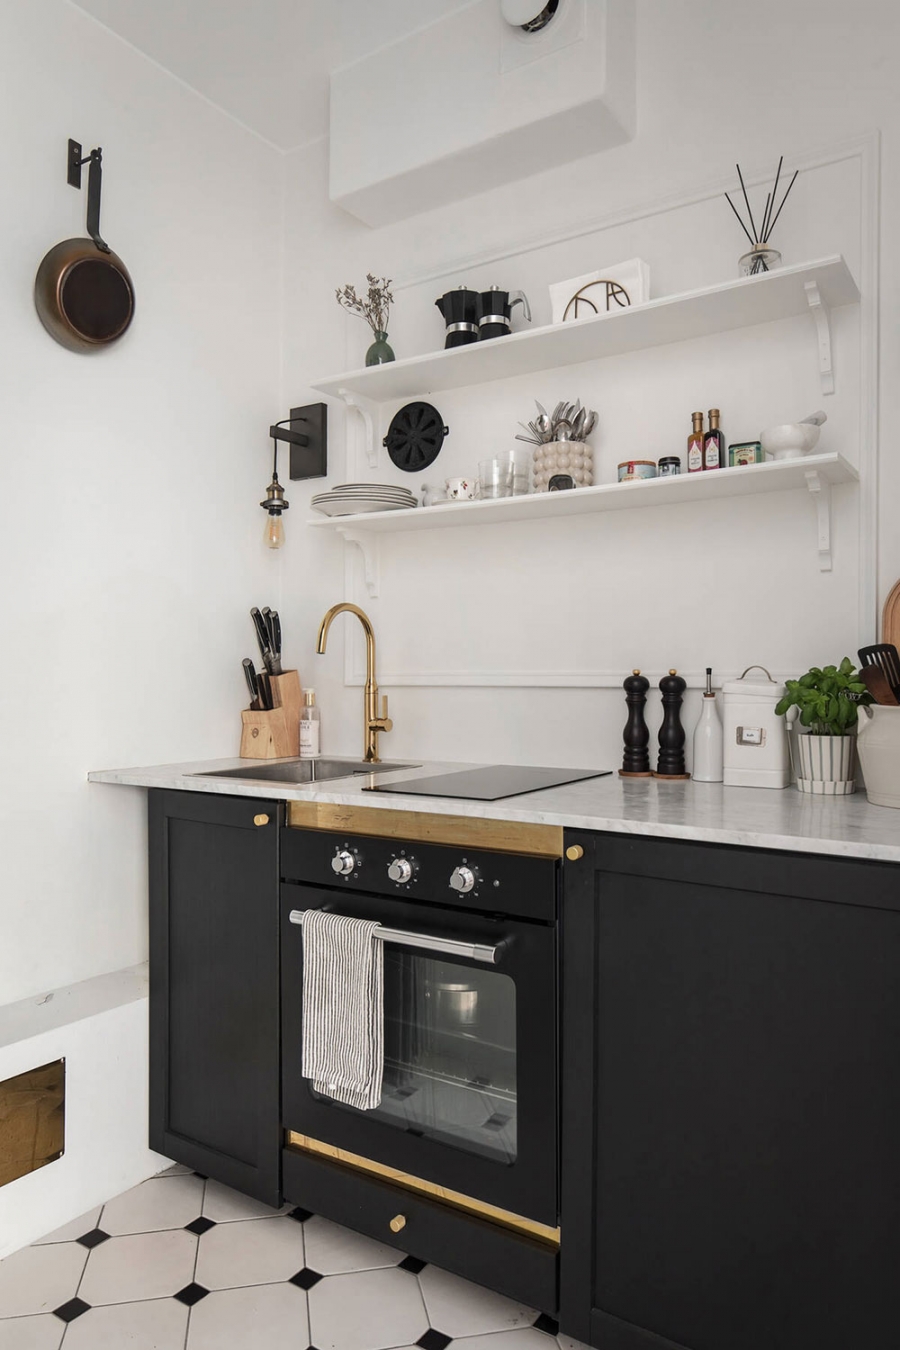 Riêng phòng bếp được lát sàn gạch màu trắng - đen để tạo sự khác biệt, đồng thời giúp vệ sinh dễ dàng hơn. Bếp thiết kế kiểu chữ I nhỏ gọn nhưng đầy đủ tiện nghi cho chủ nhân.